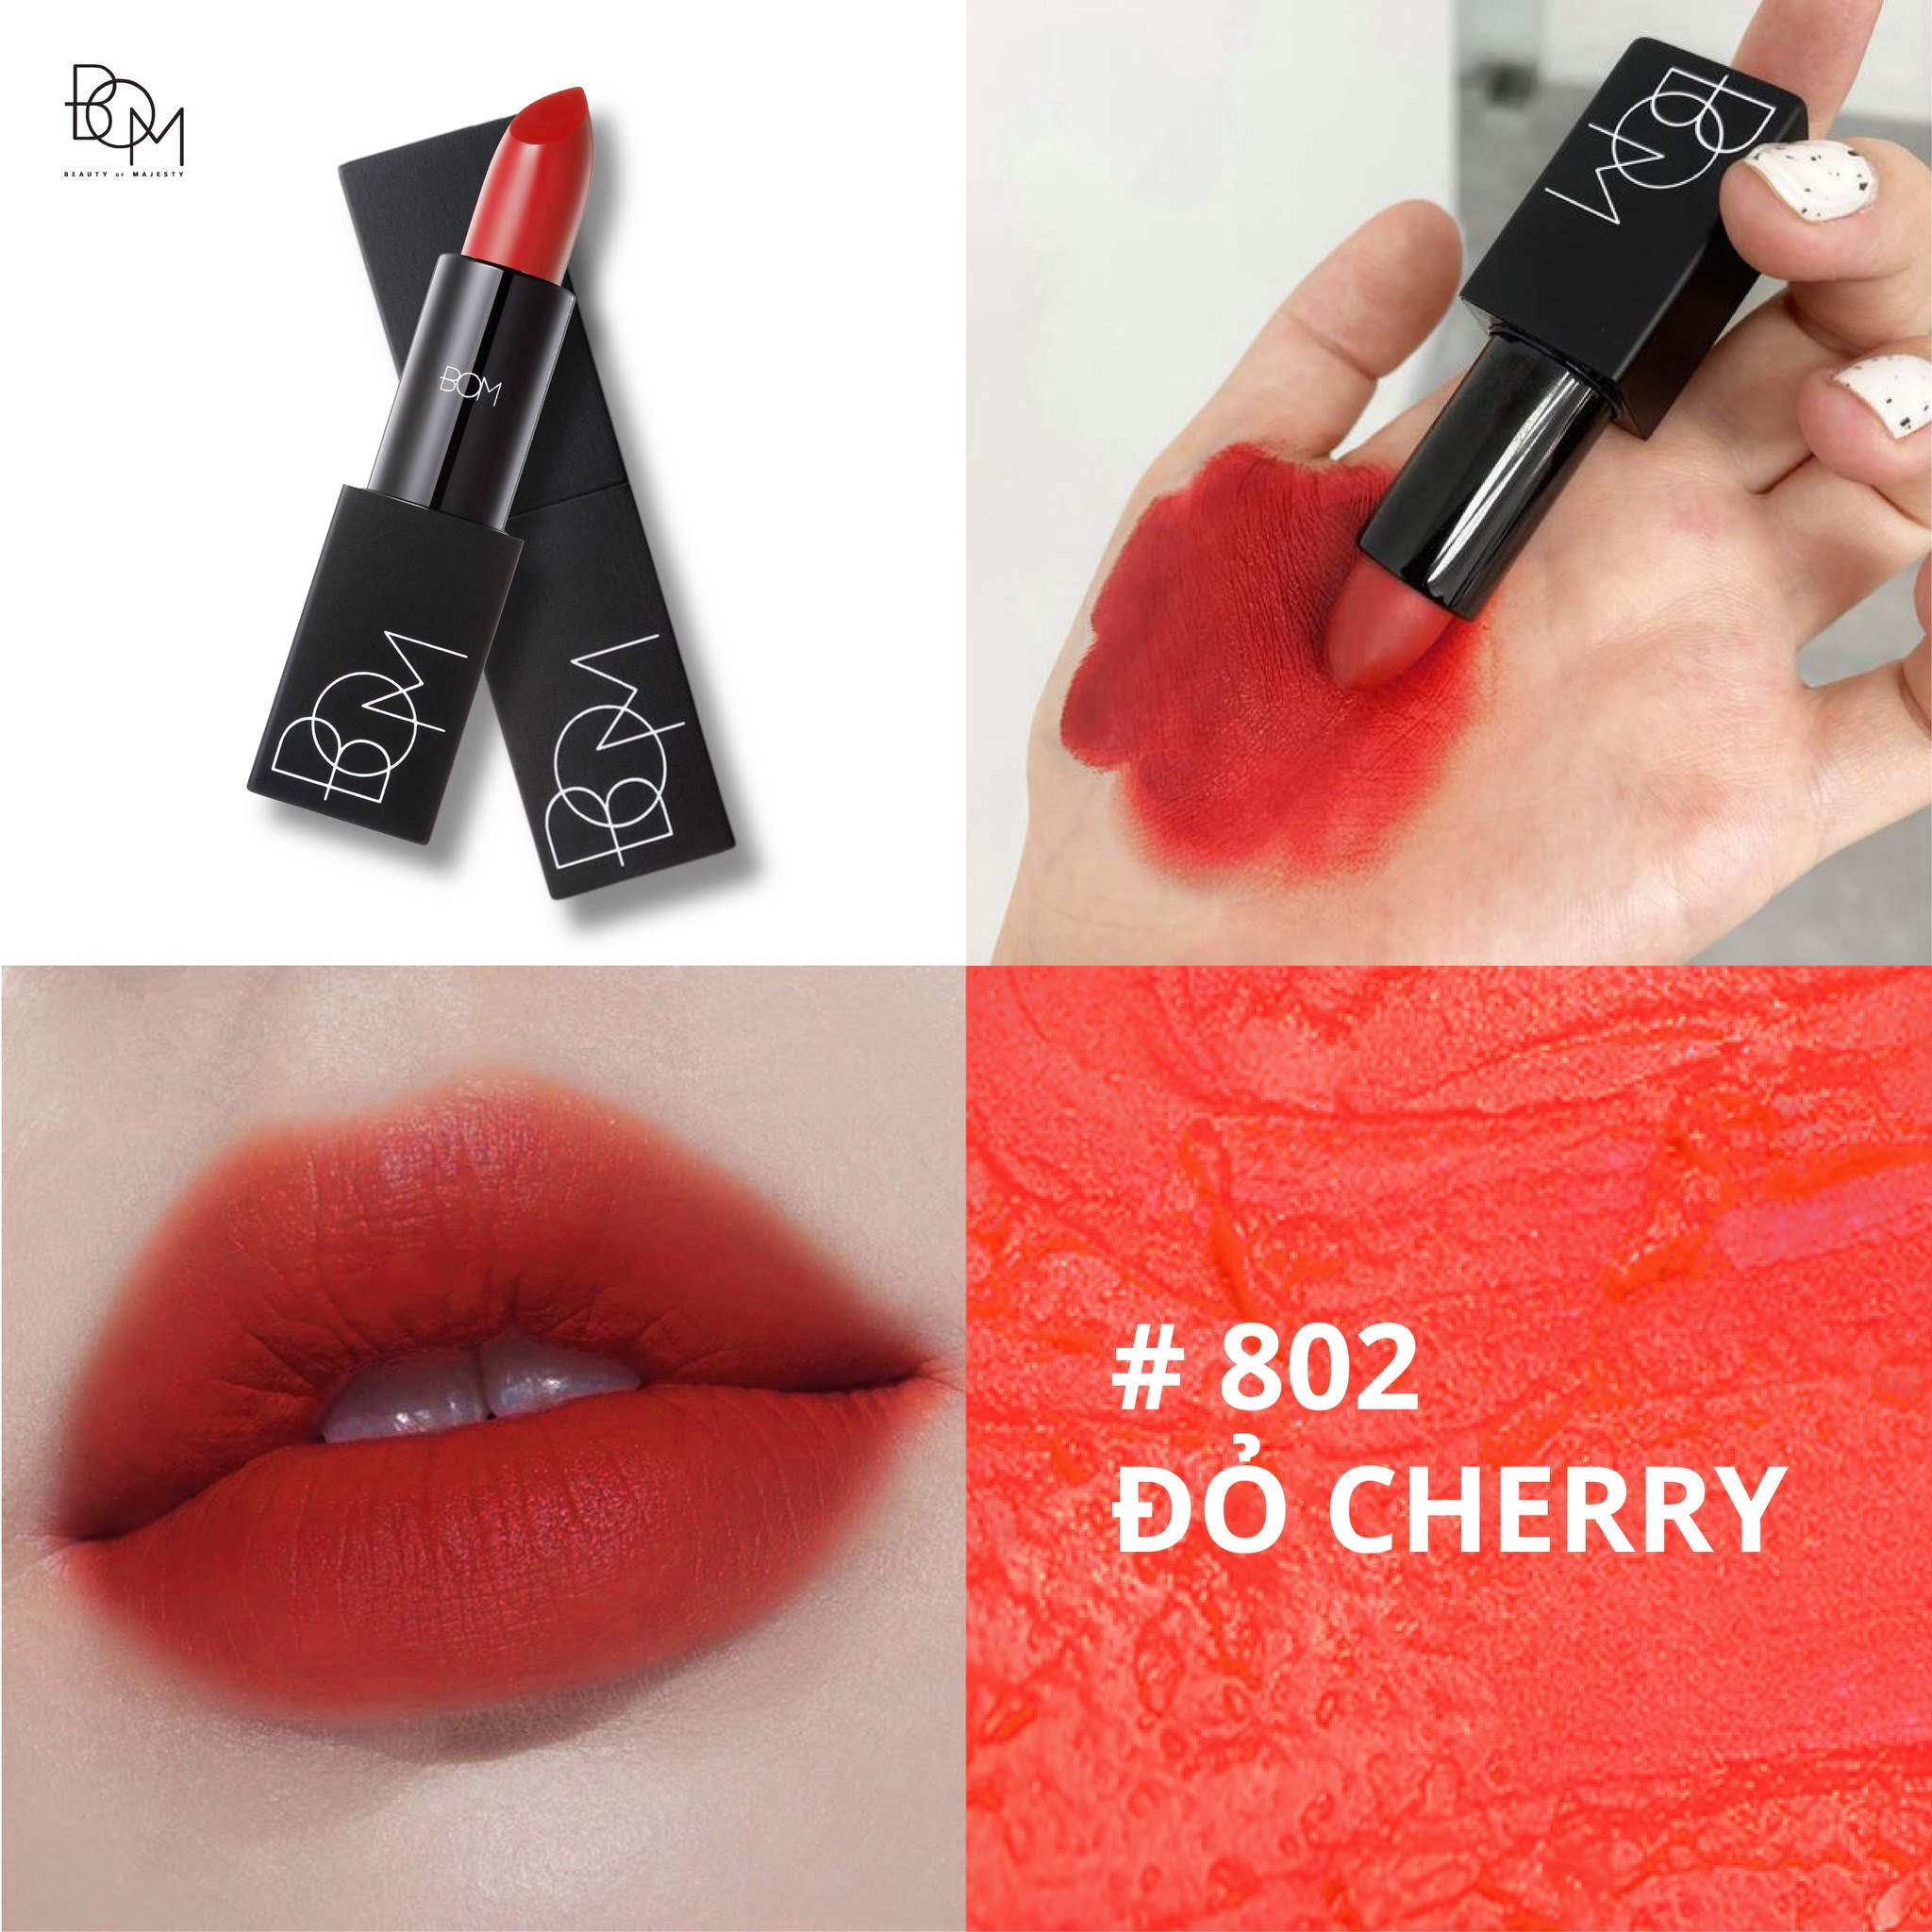 Son lì màu đỏ cam cherry BOM My Lipstick hiện đang được bán rộng rãi tại các cửa hàng mỹ phẩm